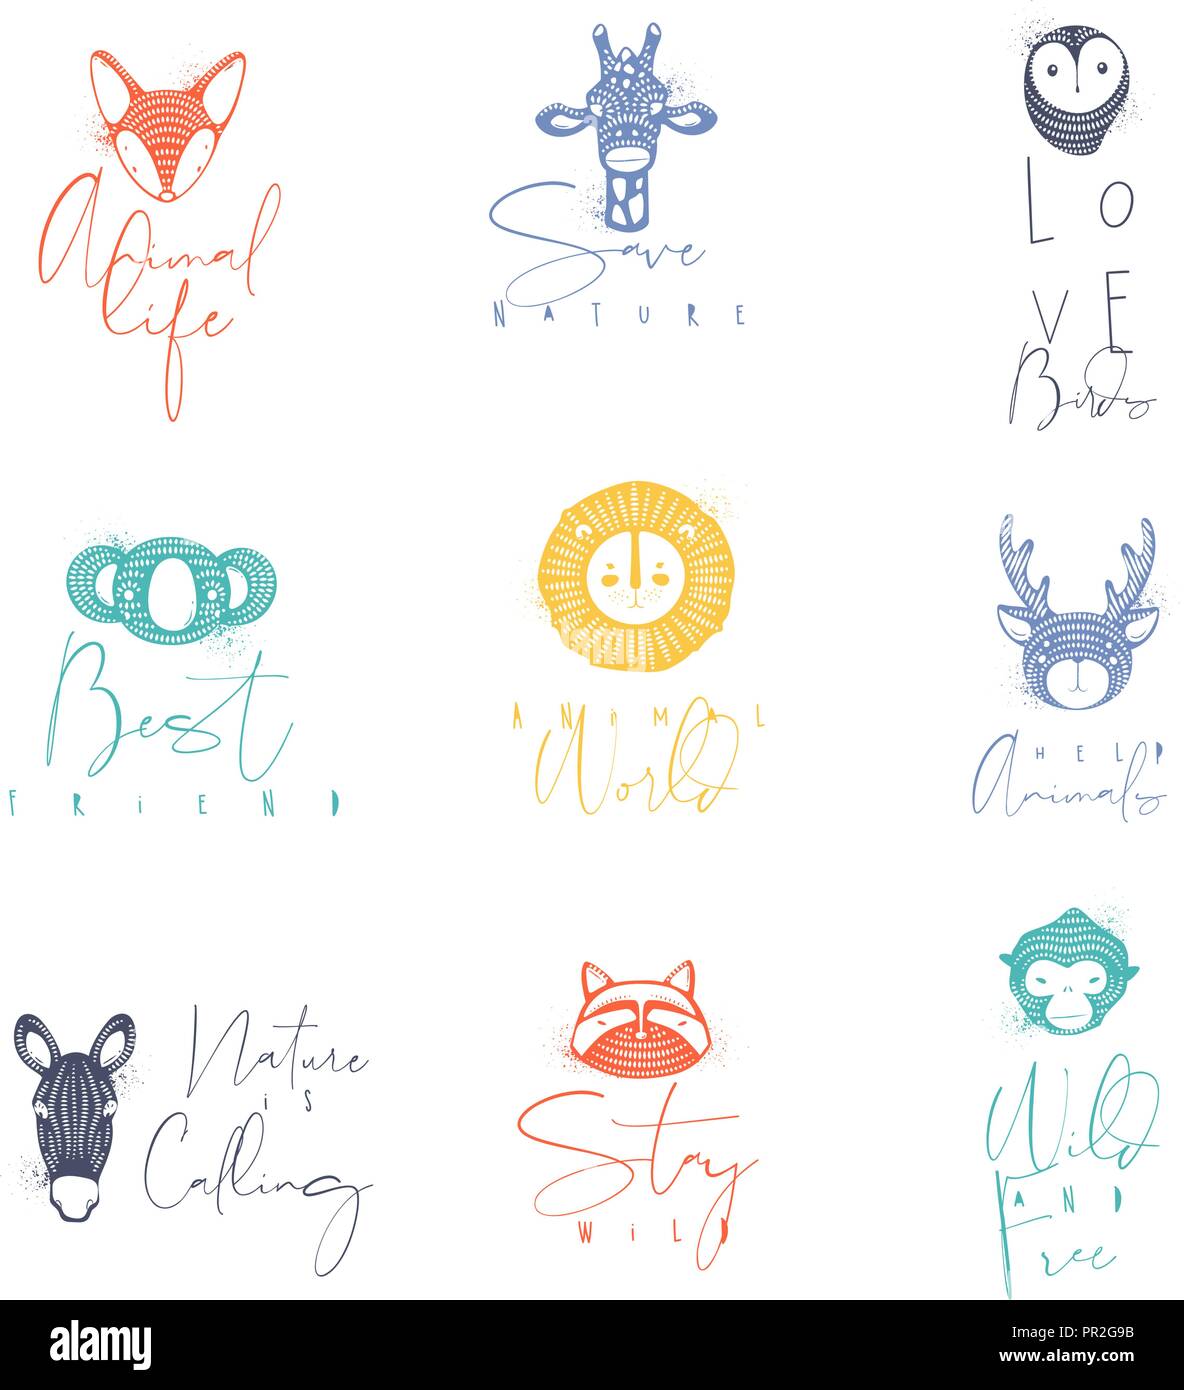 Conjunto de animales auténticos signos gráficos, Fox, Giraffe, Owl, panda, leones, antílopes, caballo, gato, mono con dibujo de letras en diferentes colores. Ilustración del Vector